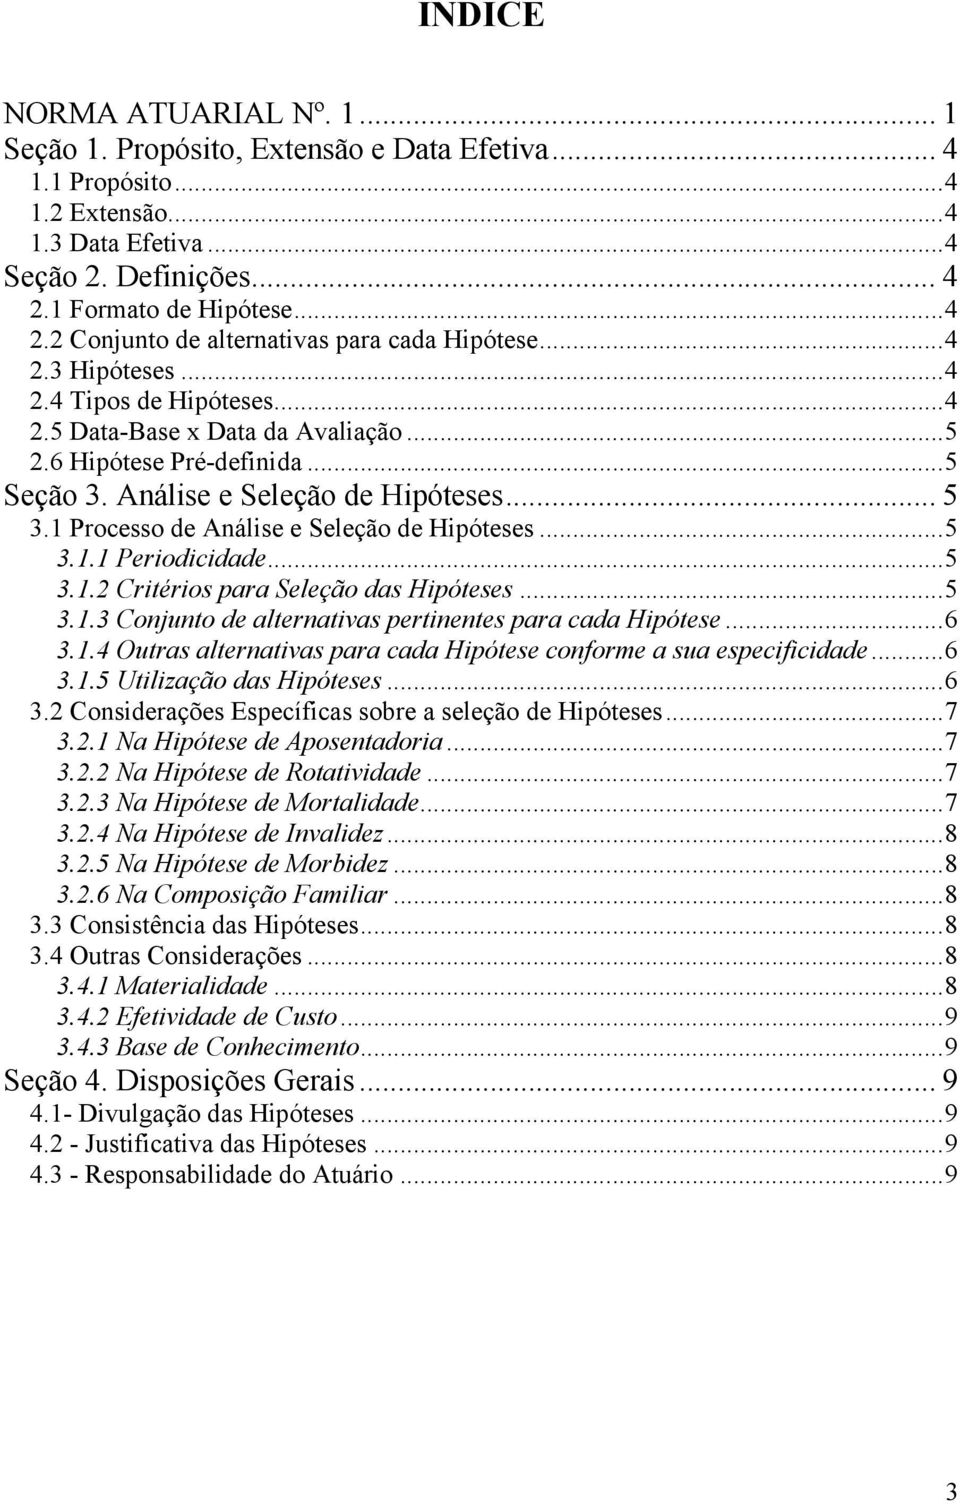 Análise e Seleção de Hipóteses... 5 3.1 Processo de Análise e Seleção de Hipóteses...5 3.1.1 Periodicidade...5 3.1.2 Critérios para Seleção das Hipóteses...5 3.1.3 Conjunto de alternativas pertinentes para cada Hipótese.